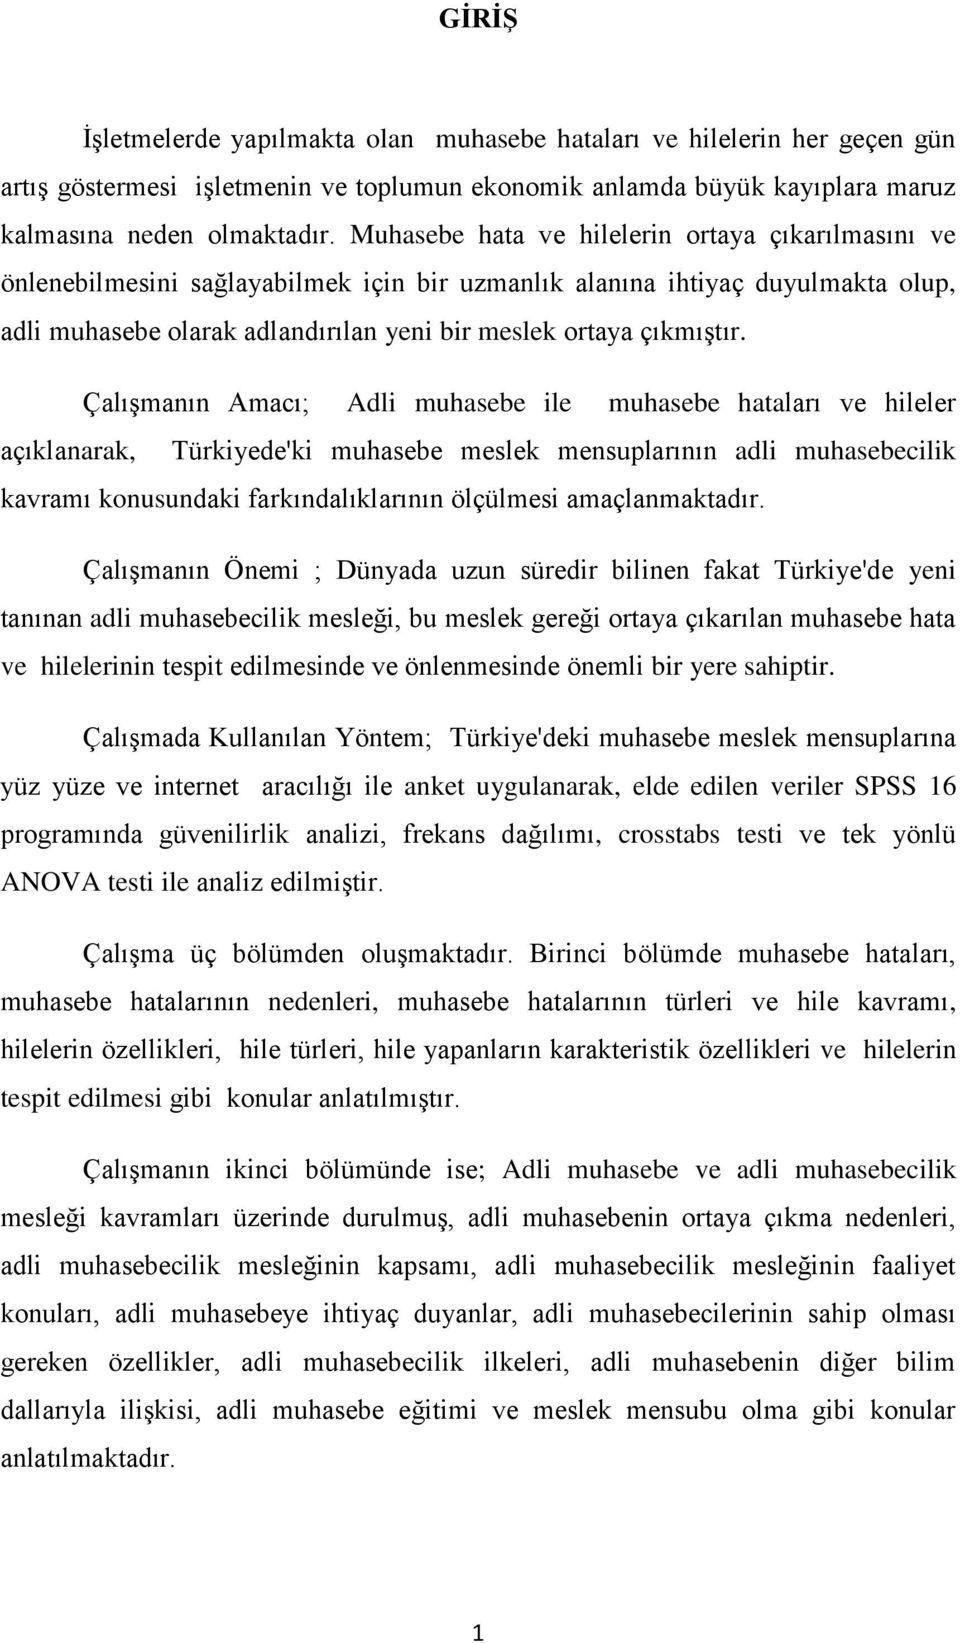 ÇalıĢmanın Amacı; Adli muhasebe ile muhasebe hataları ve hileler açıklanarak, Türkiyede'ki muhasebe meslek mensuplarının adli muhasebecilik kavramı konusundaki farkındalıklarının ölçülmesi